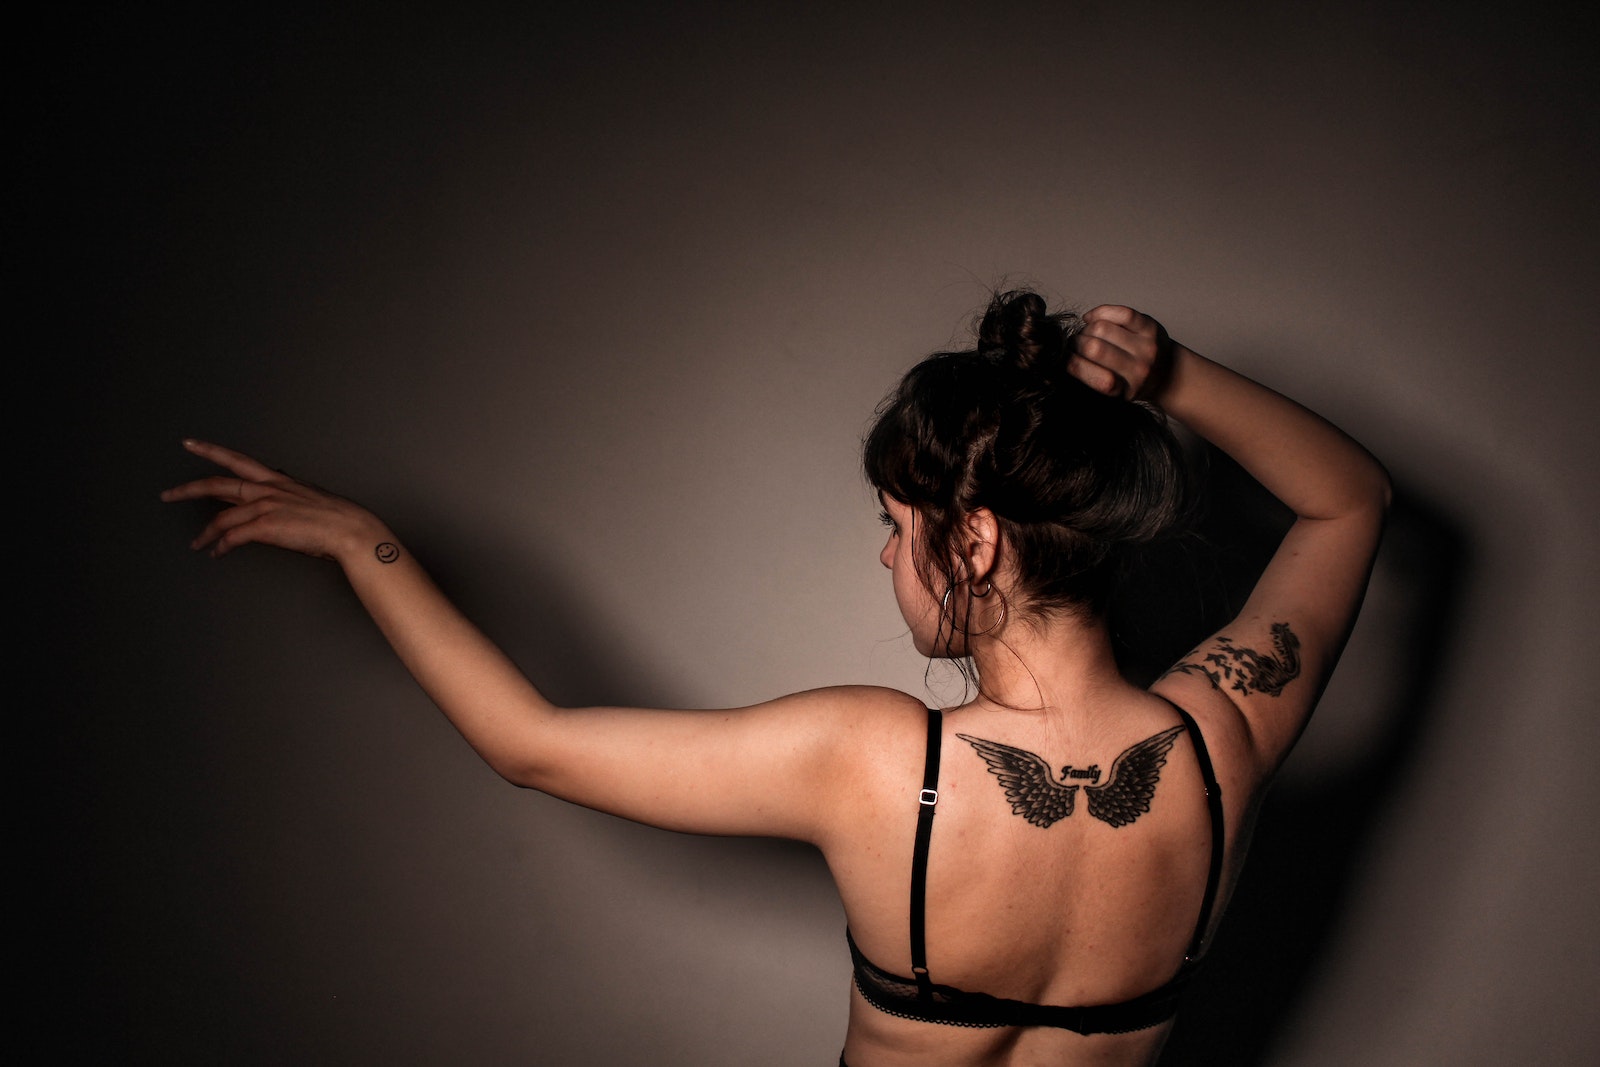 Woman in Eagle Tattoo in Back Wearing Black Bra